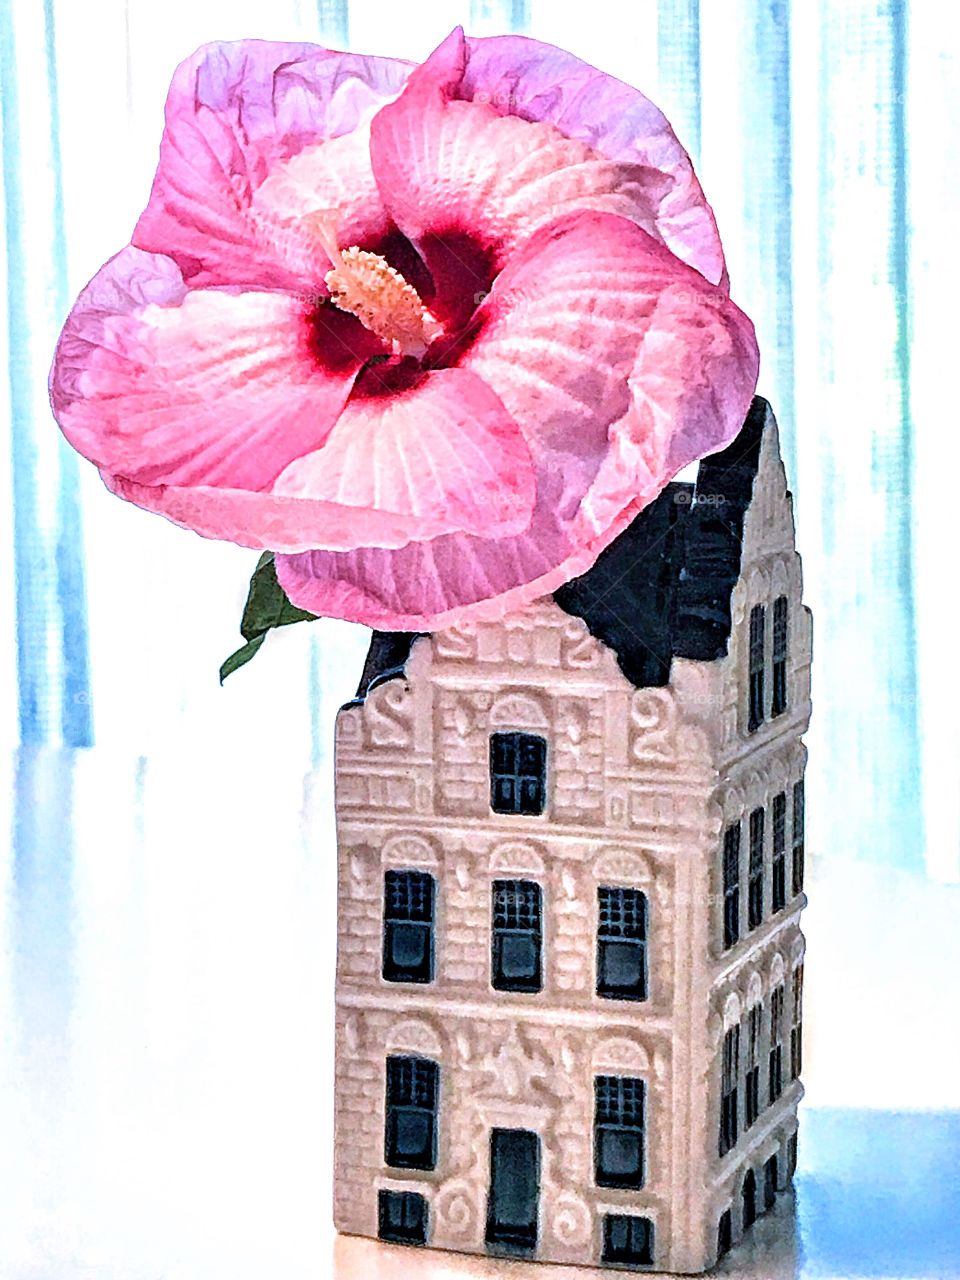 Rose Mallow Hibiscus in vase